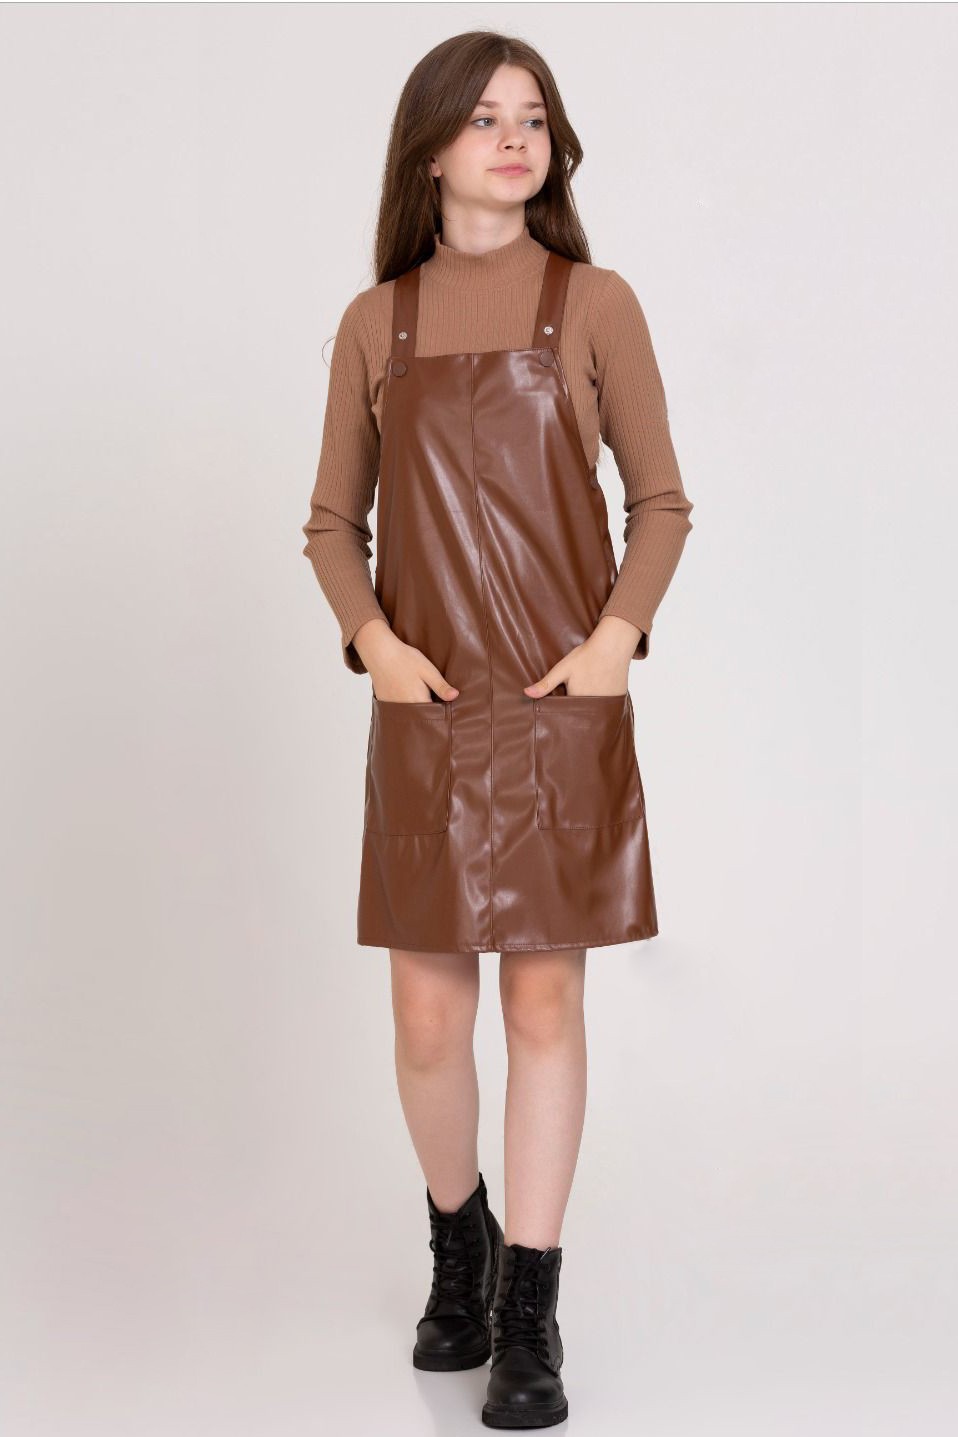 Basıc Deri Çıtçıtlı Elbise 23141 - Kahverengi